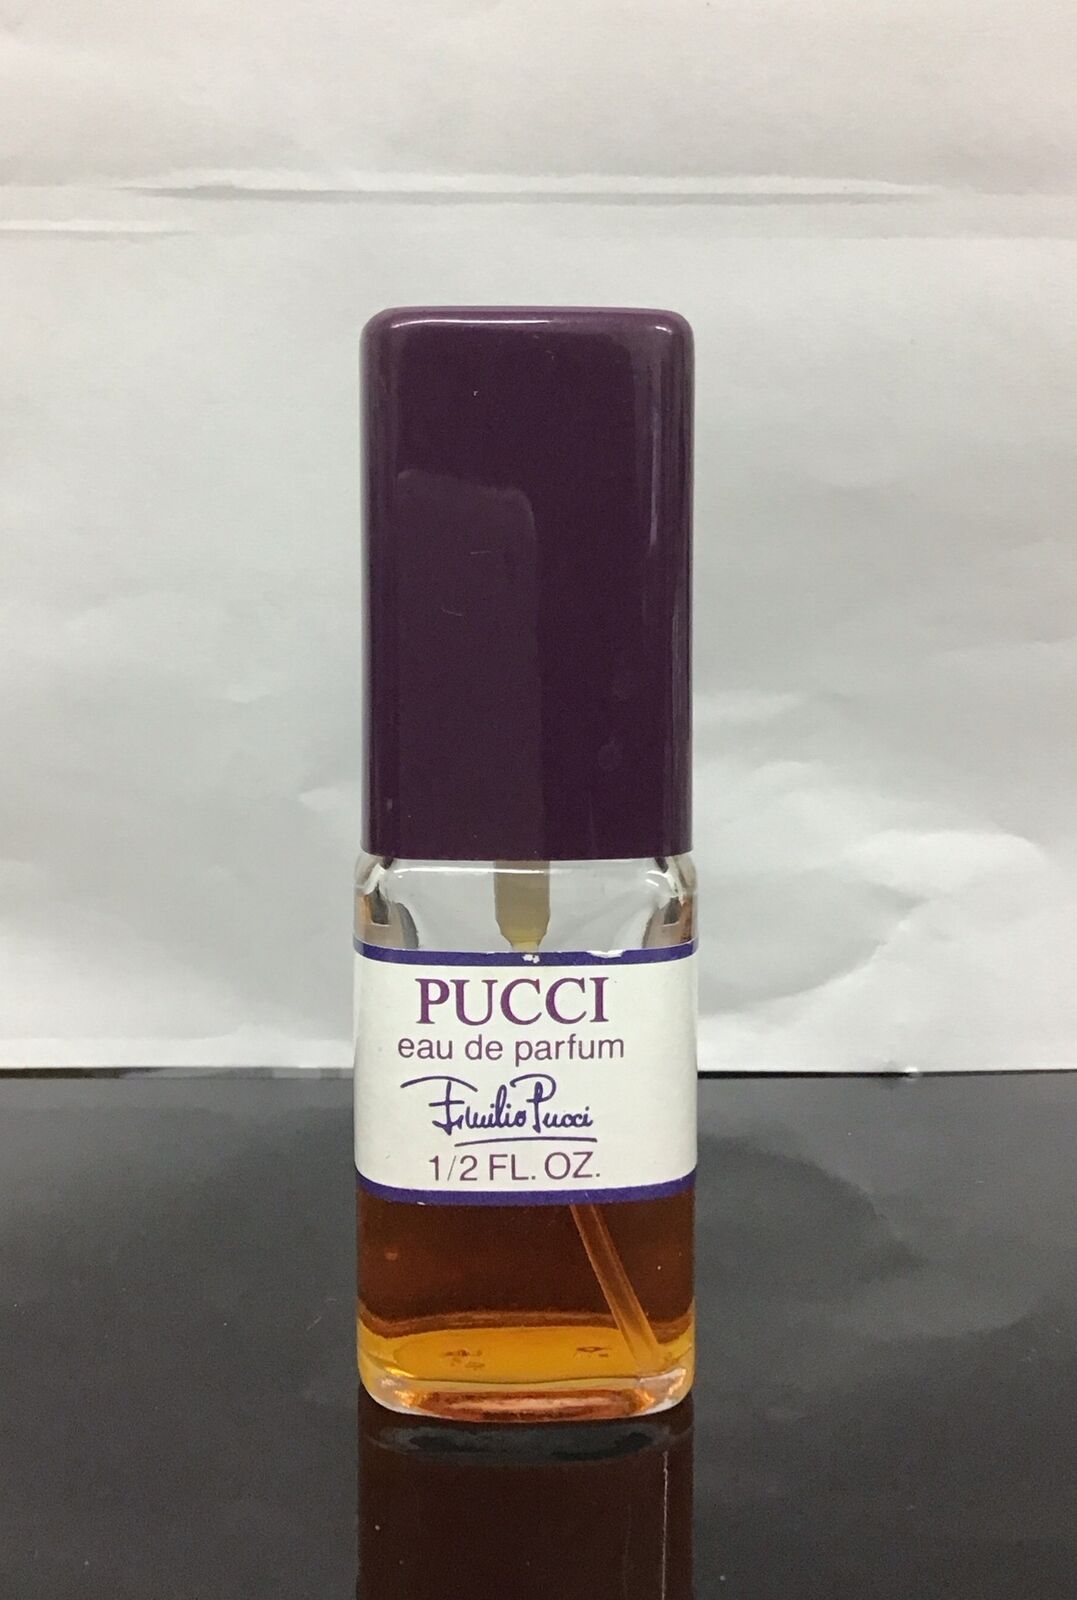 Pucci by Emilio Pucci 1/2 Oz  Eau de Parfum RARE 80% FULL  as pictured